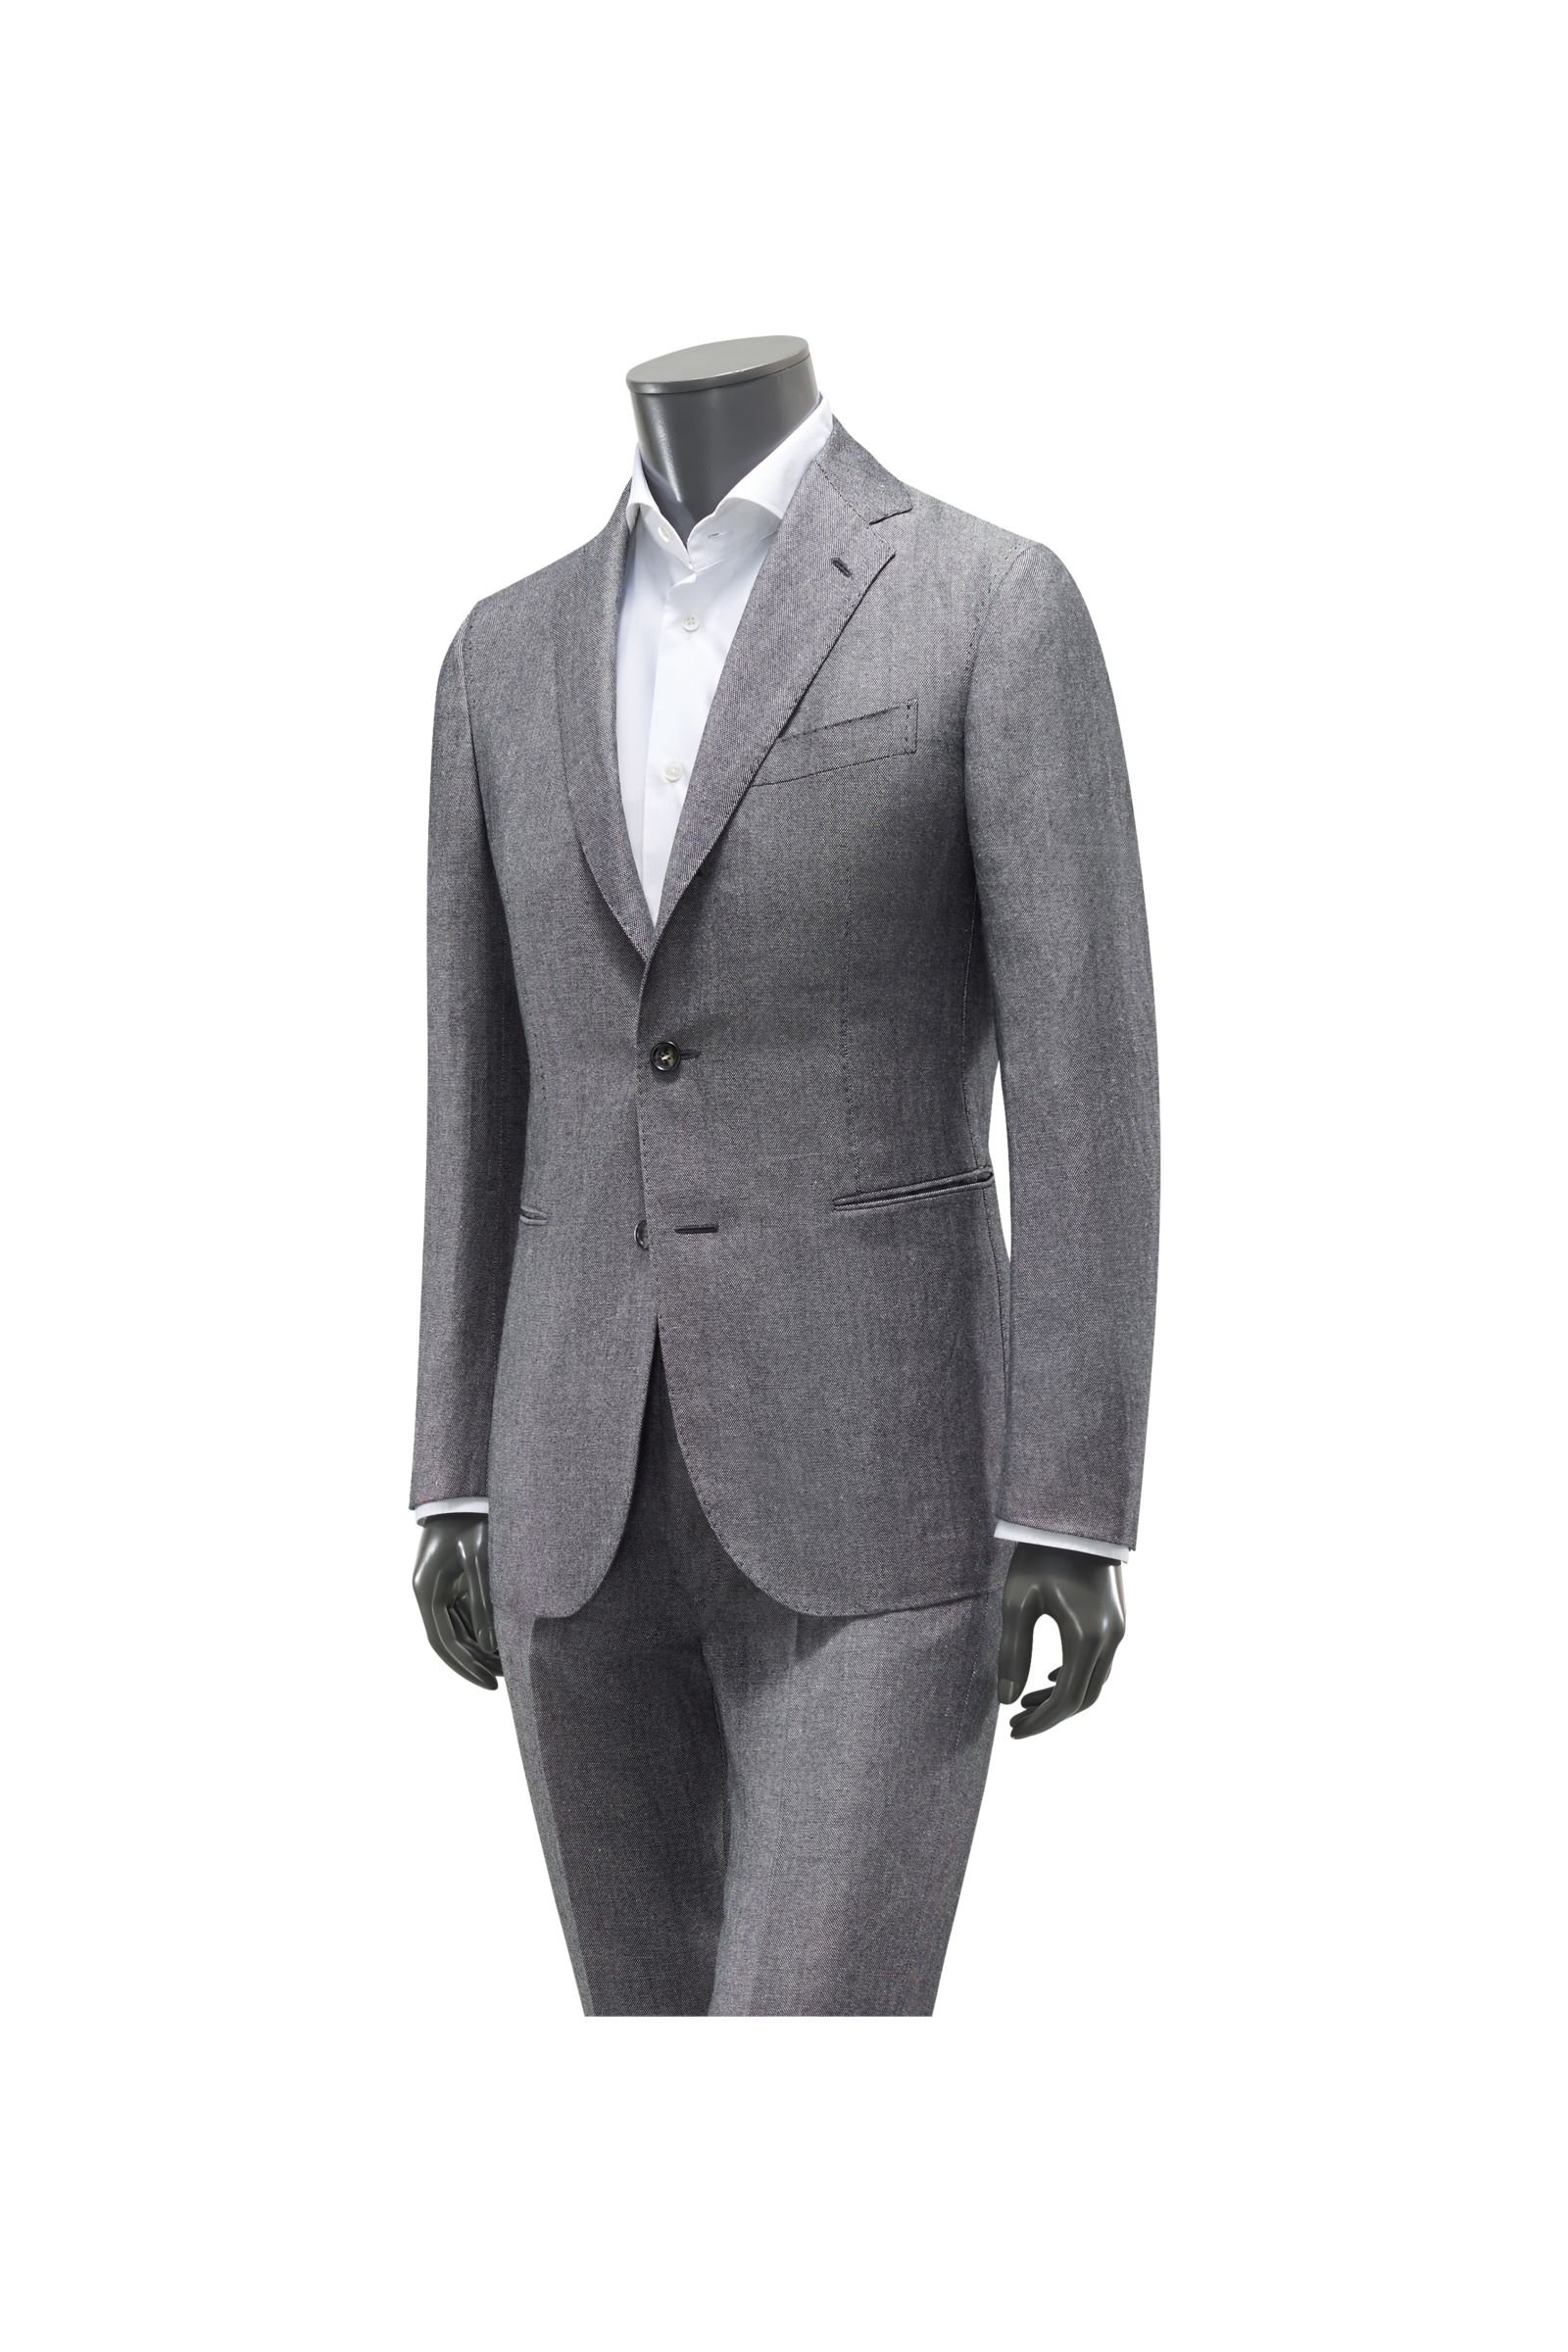 Suit grey-blue patterned